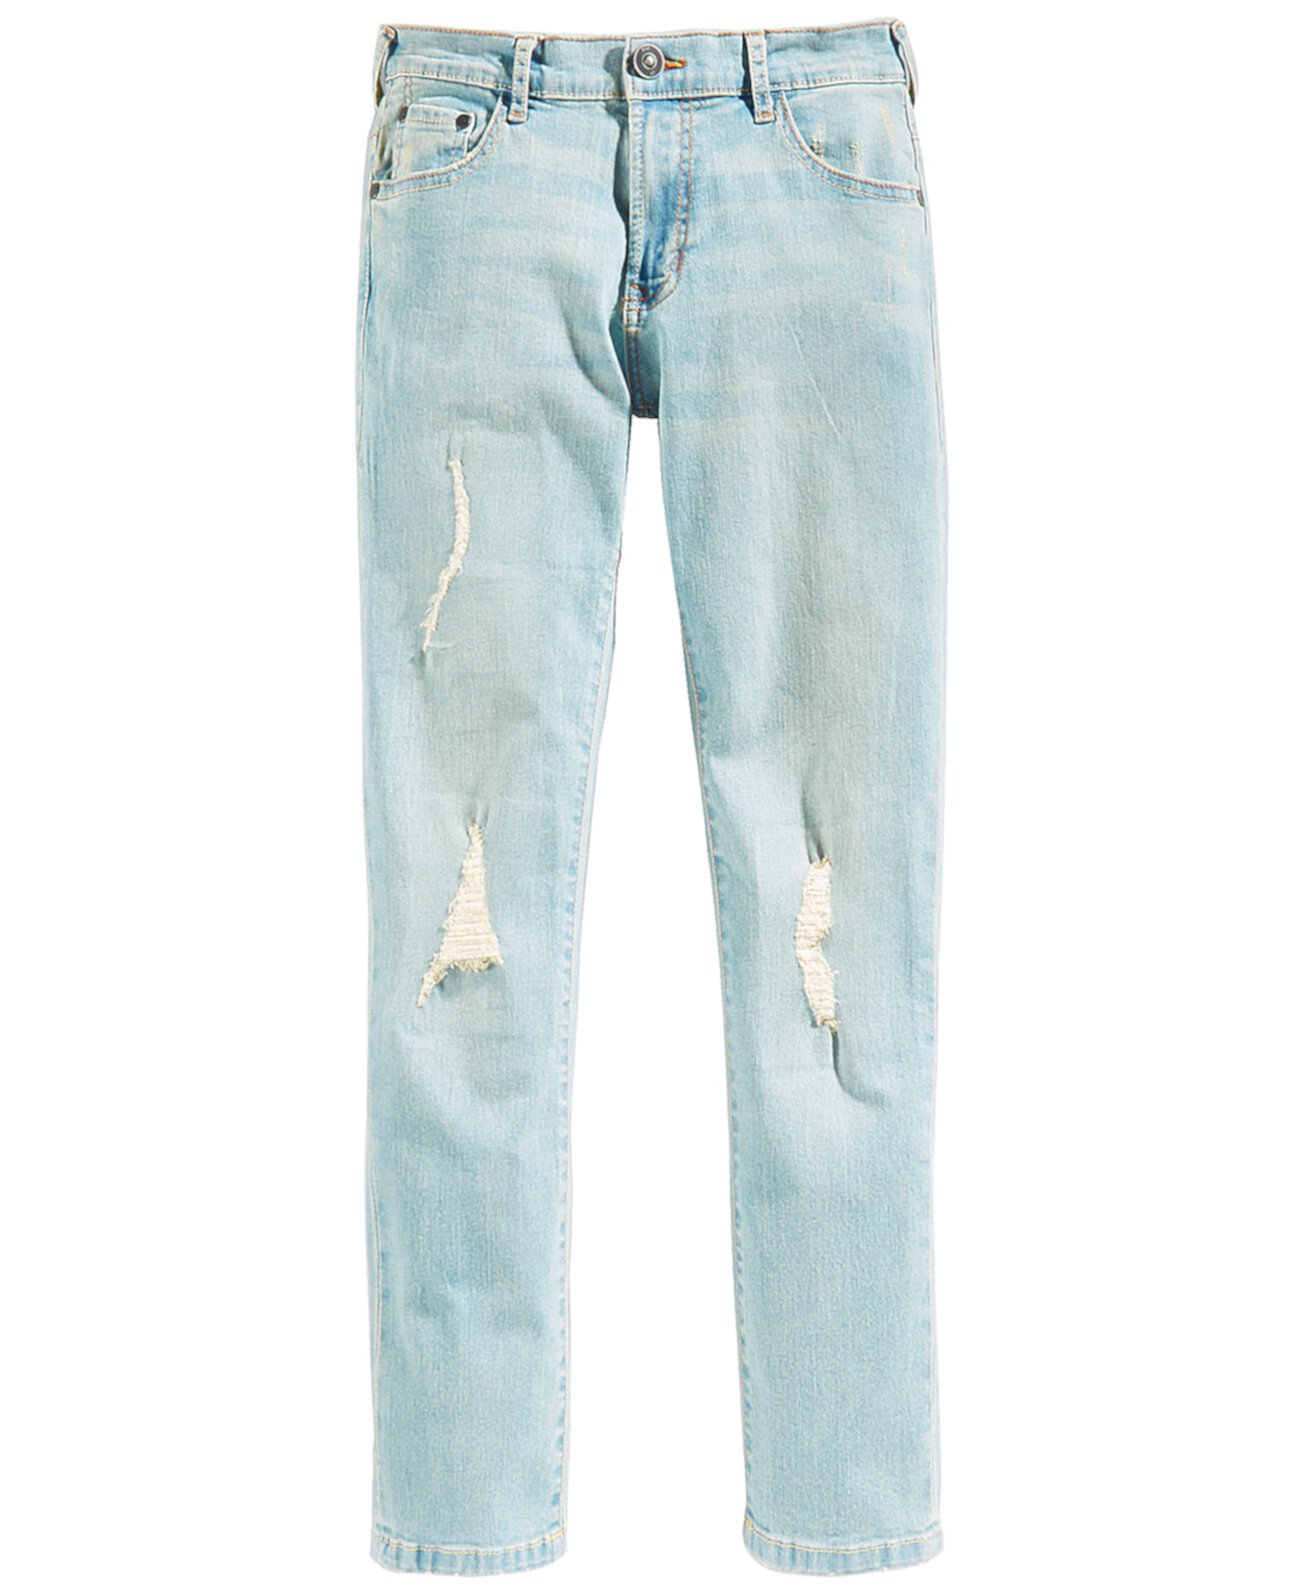 Облегающие джинсовые джинсы скинни Big Big Boys (8-20), созданные для Macy's Ring of Fire